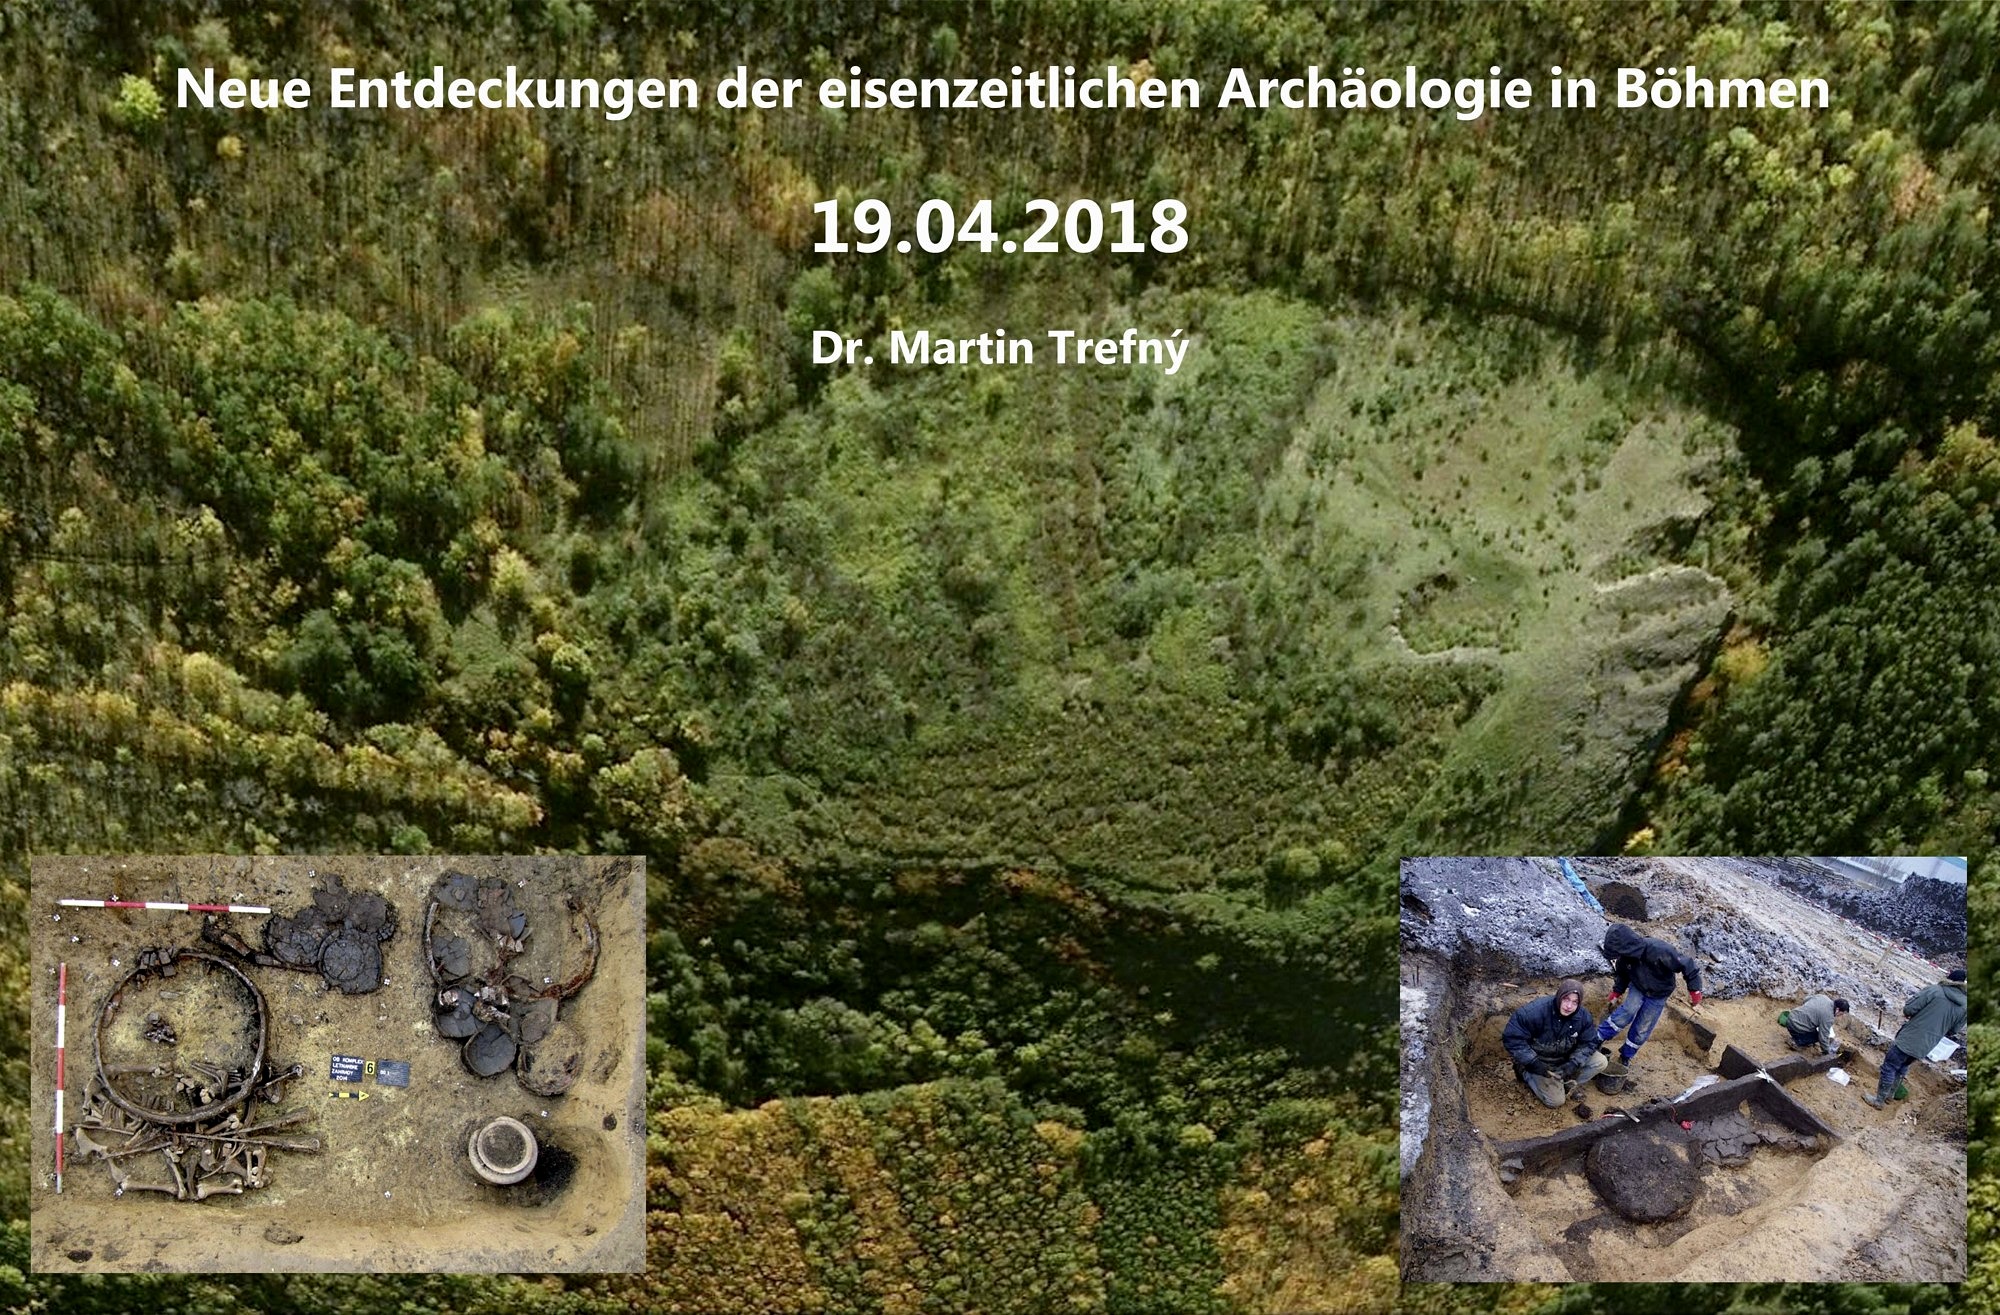 Zum Artikel "Archäologisches Kolloquium am 19.04.2018"